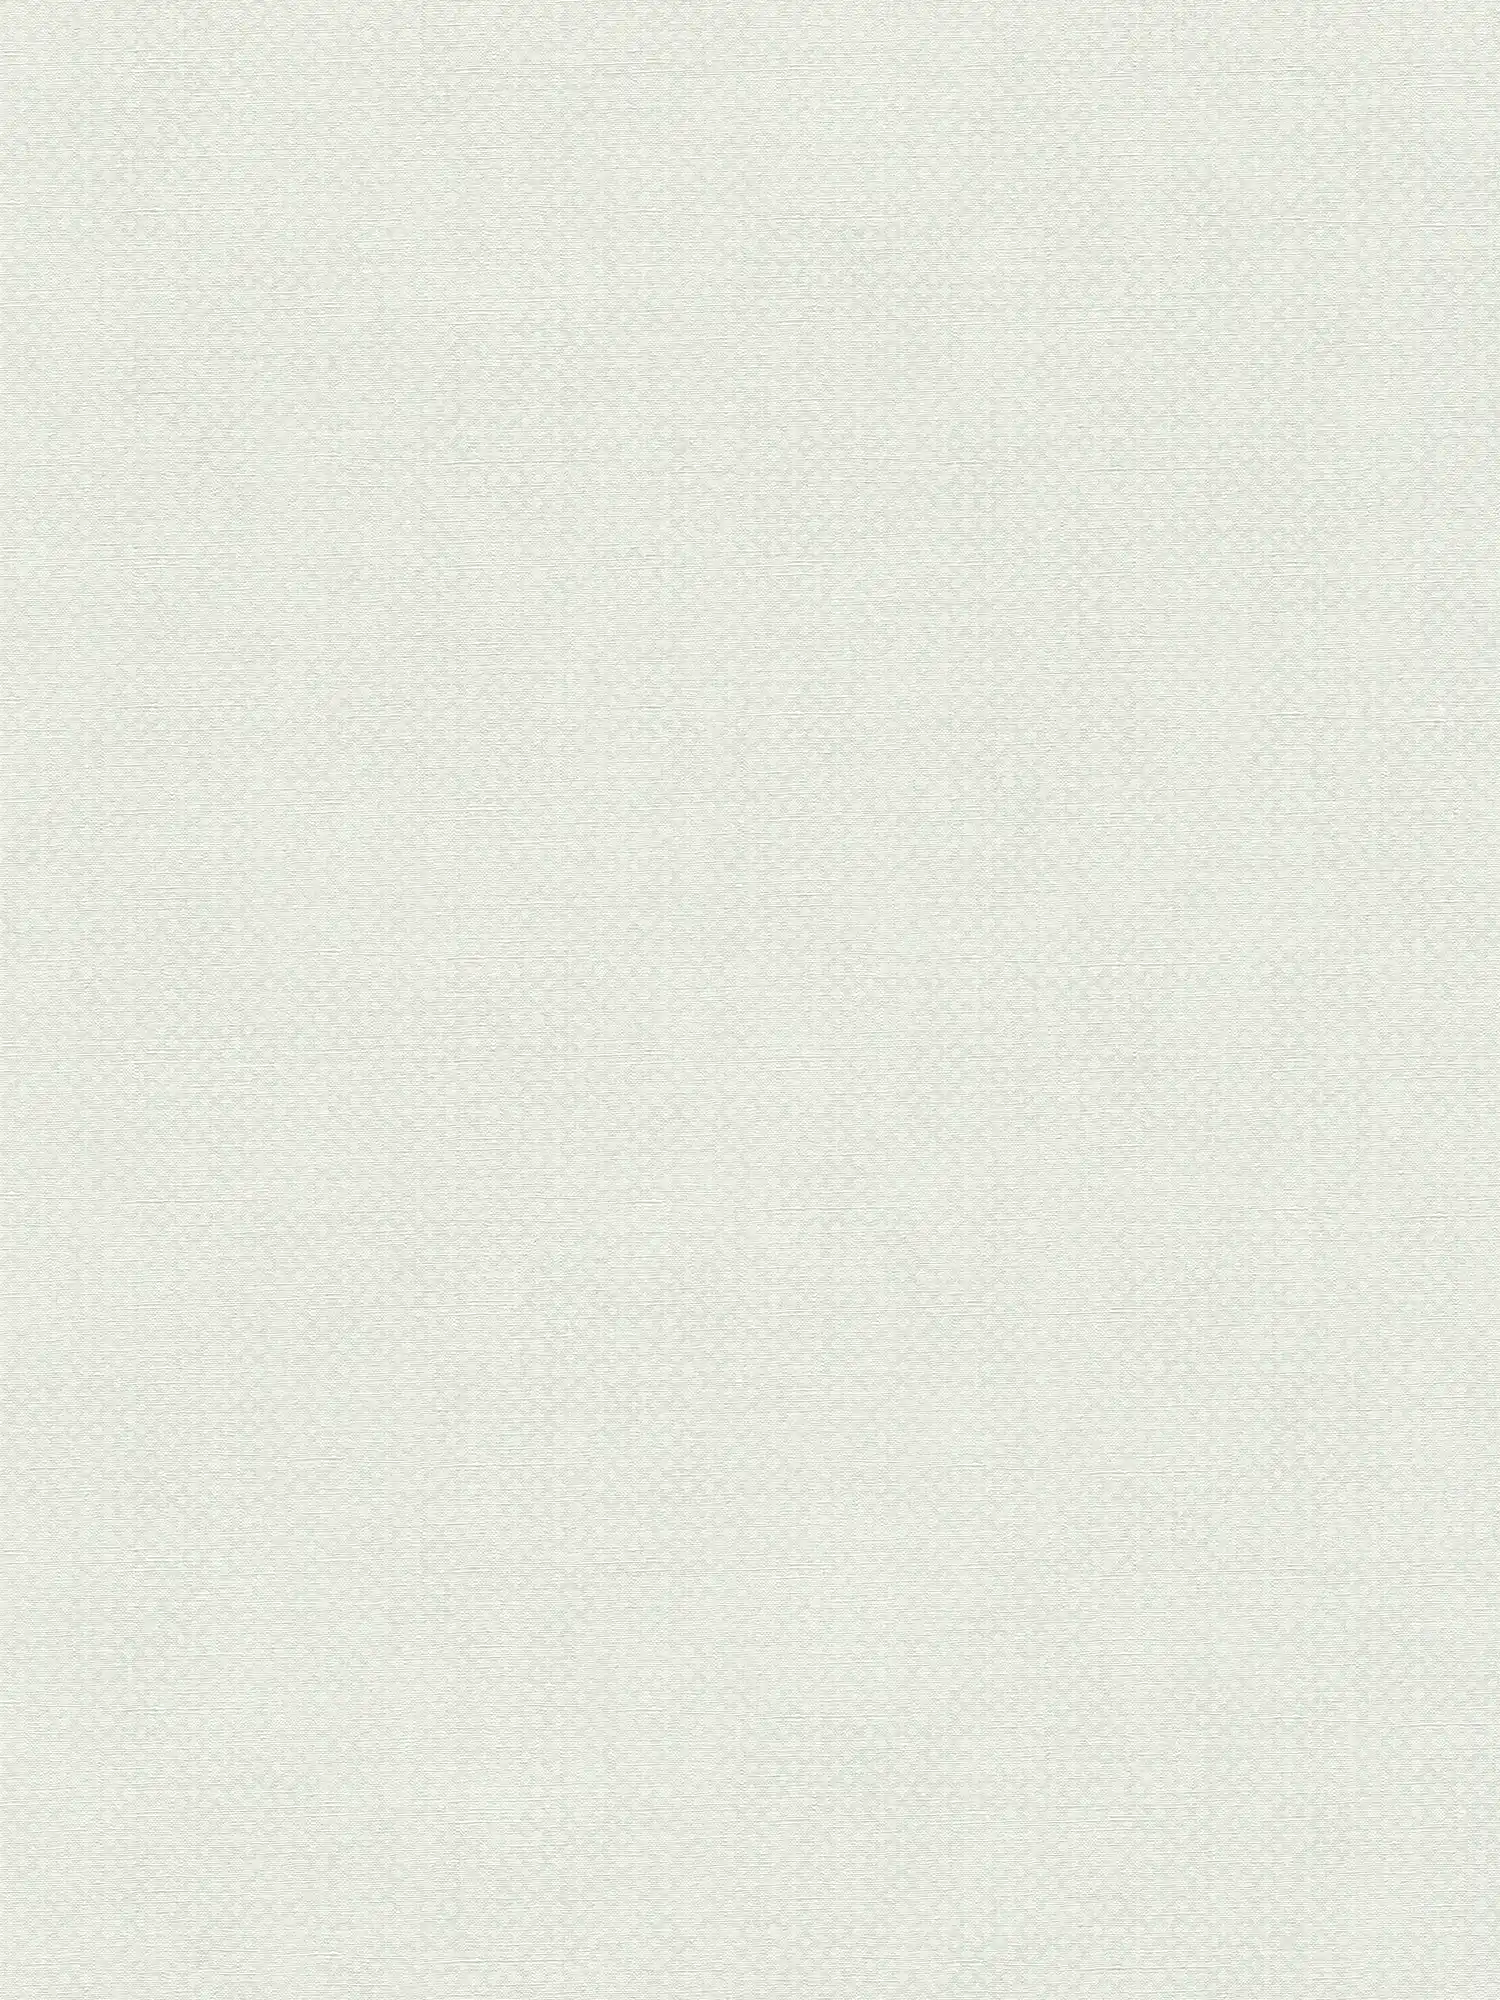 Vliestapete mit feinem Strukturmuster – Grau, Weiß
